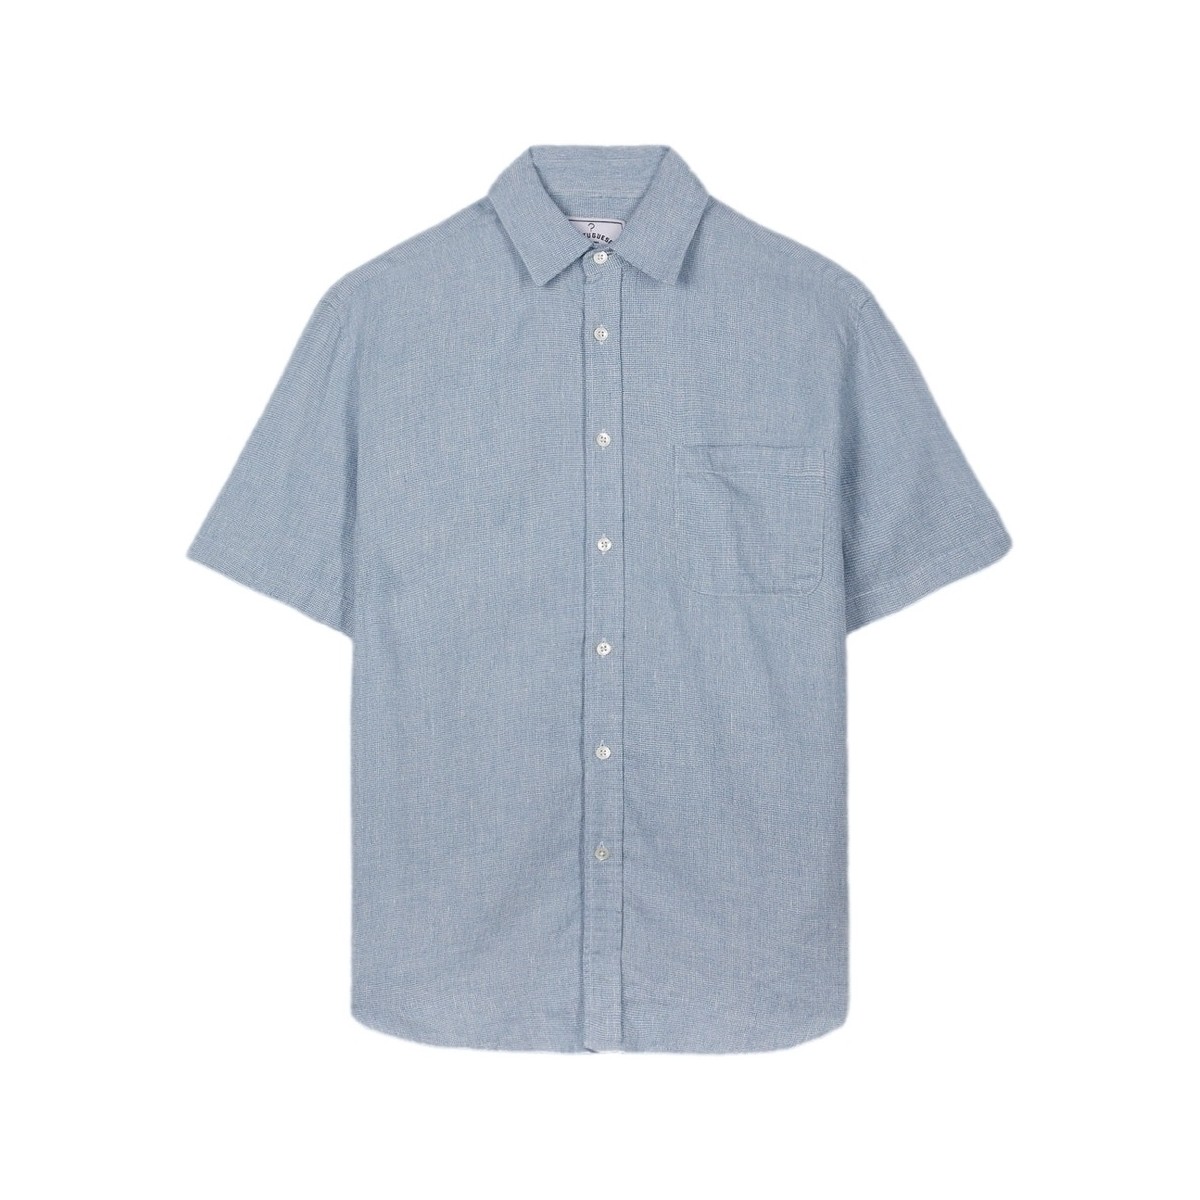 tekstylia Męskie Koszule z długim rękawem Portuguese Flannel New Highline Shirt Niebieski